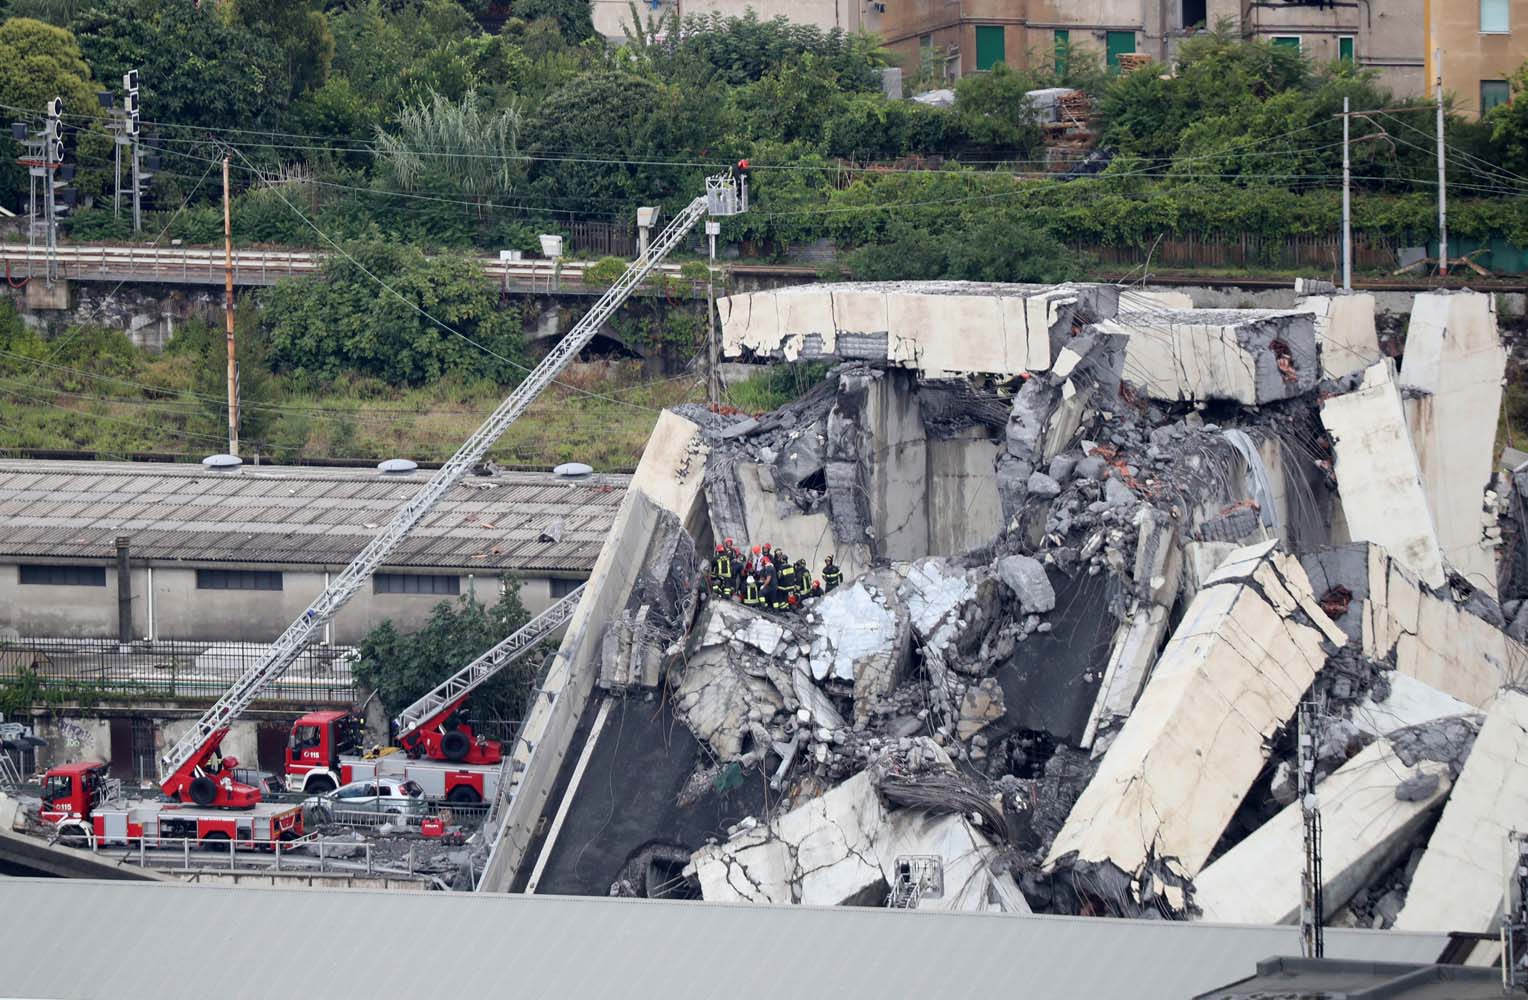 Morandi advirtió hace 40 años sobre riesgos en puente derrumbado en Génova